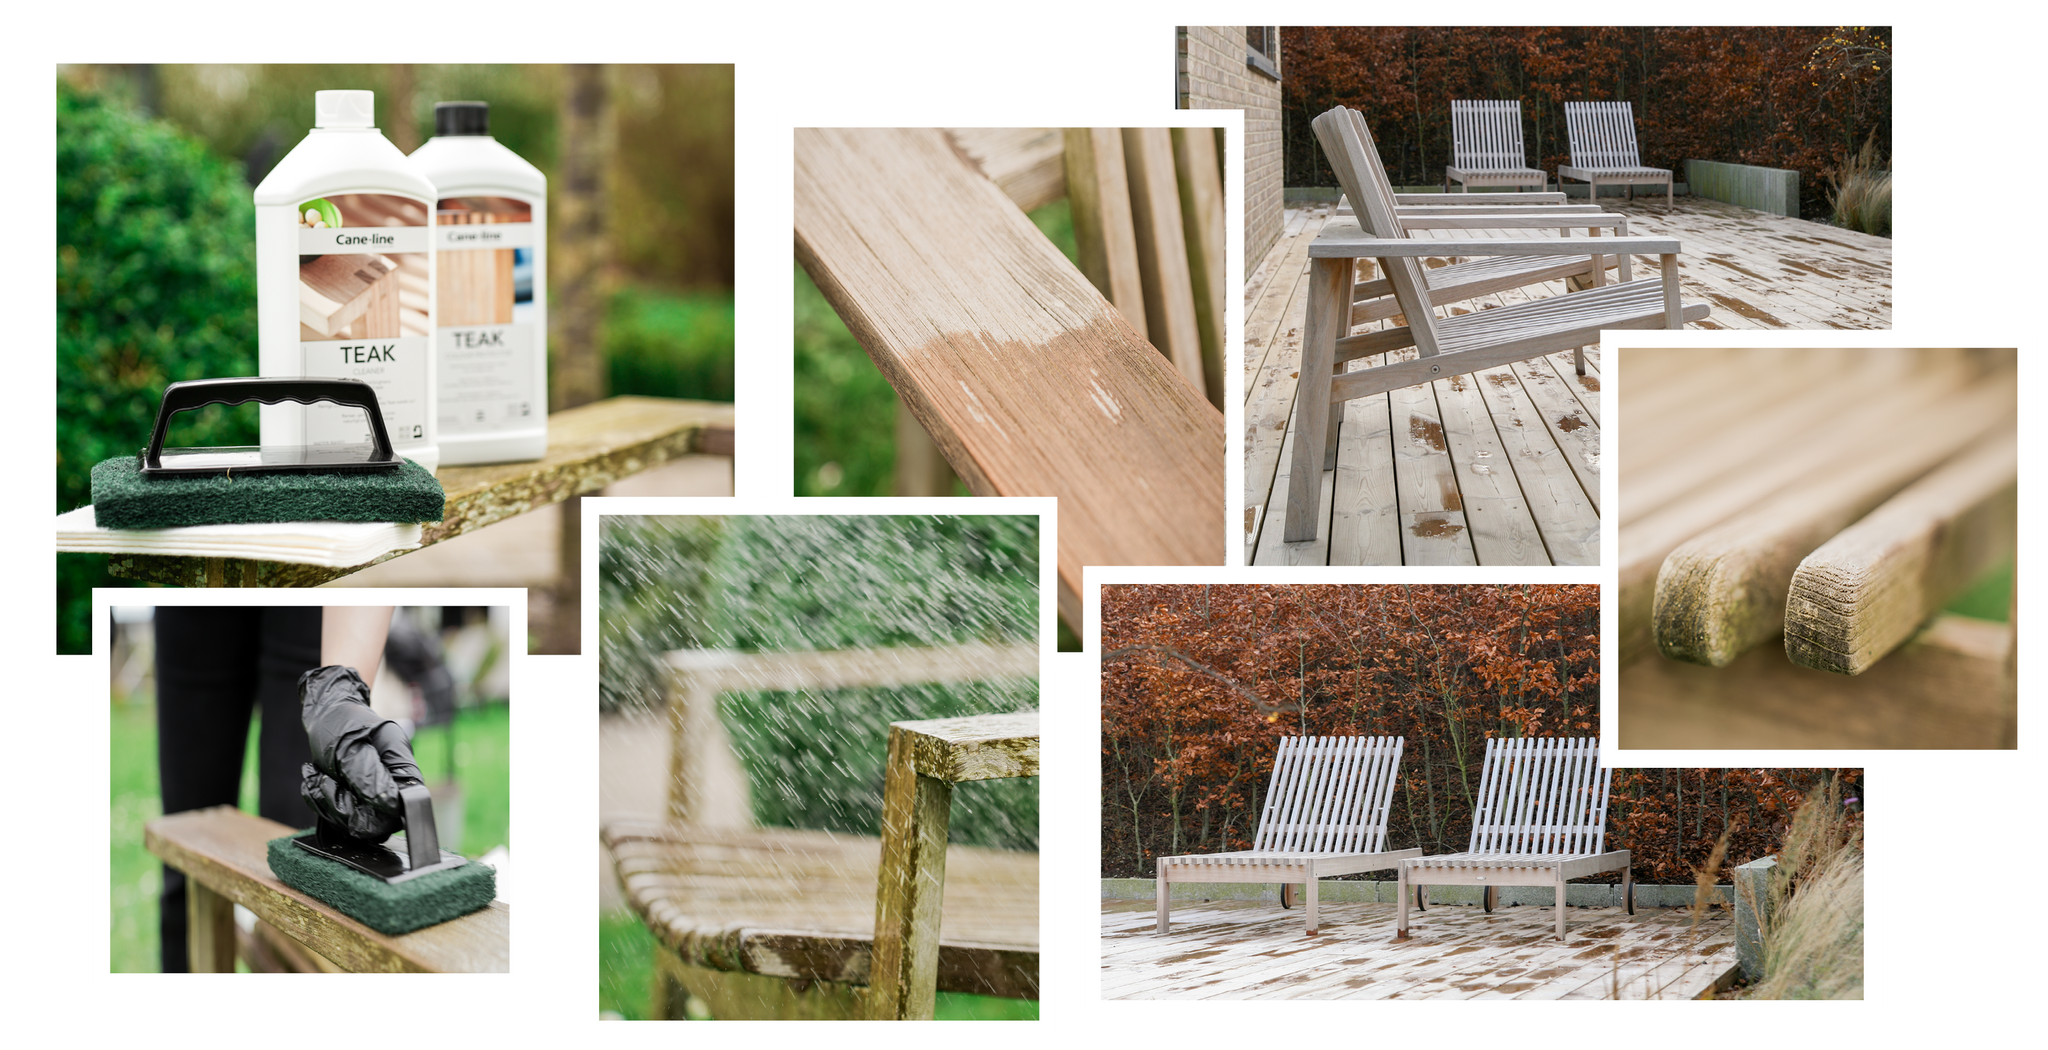 Collage billeder med teak møbler i have og teak pleje produkter